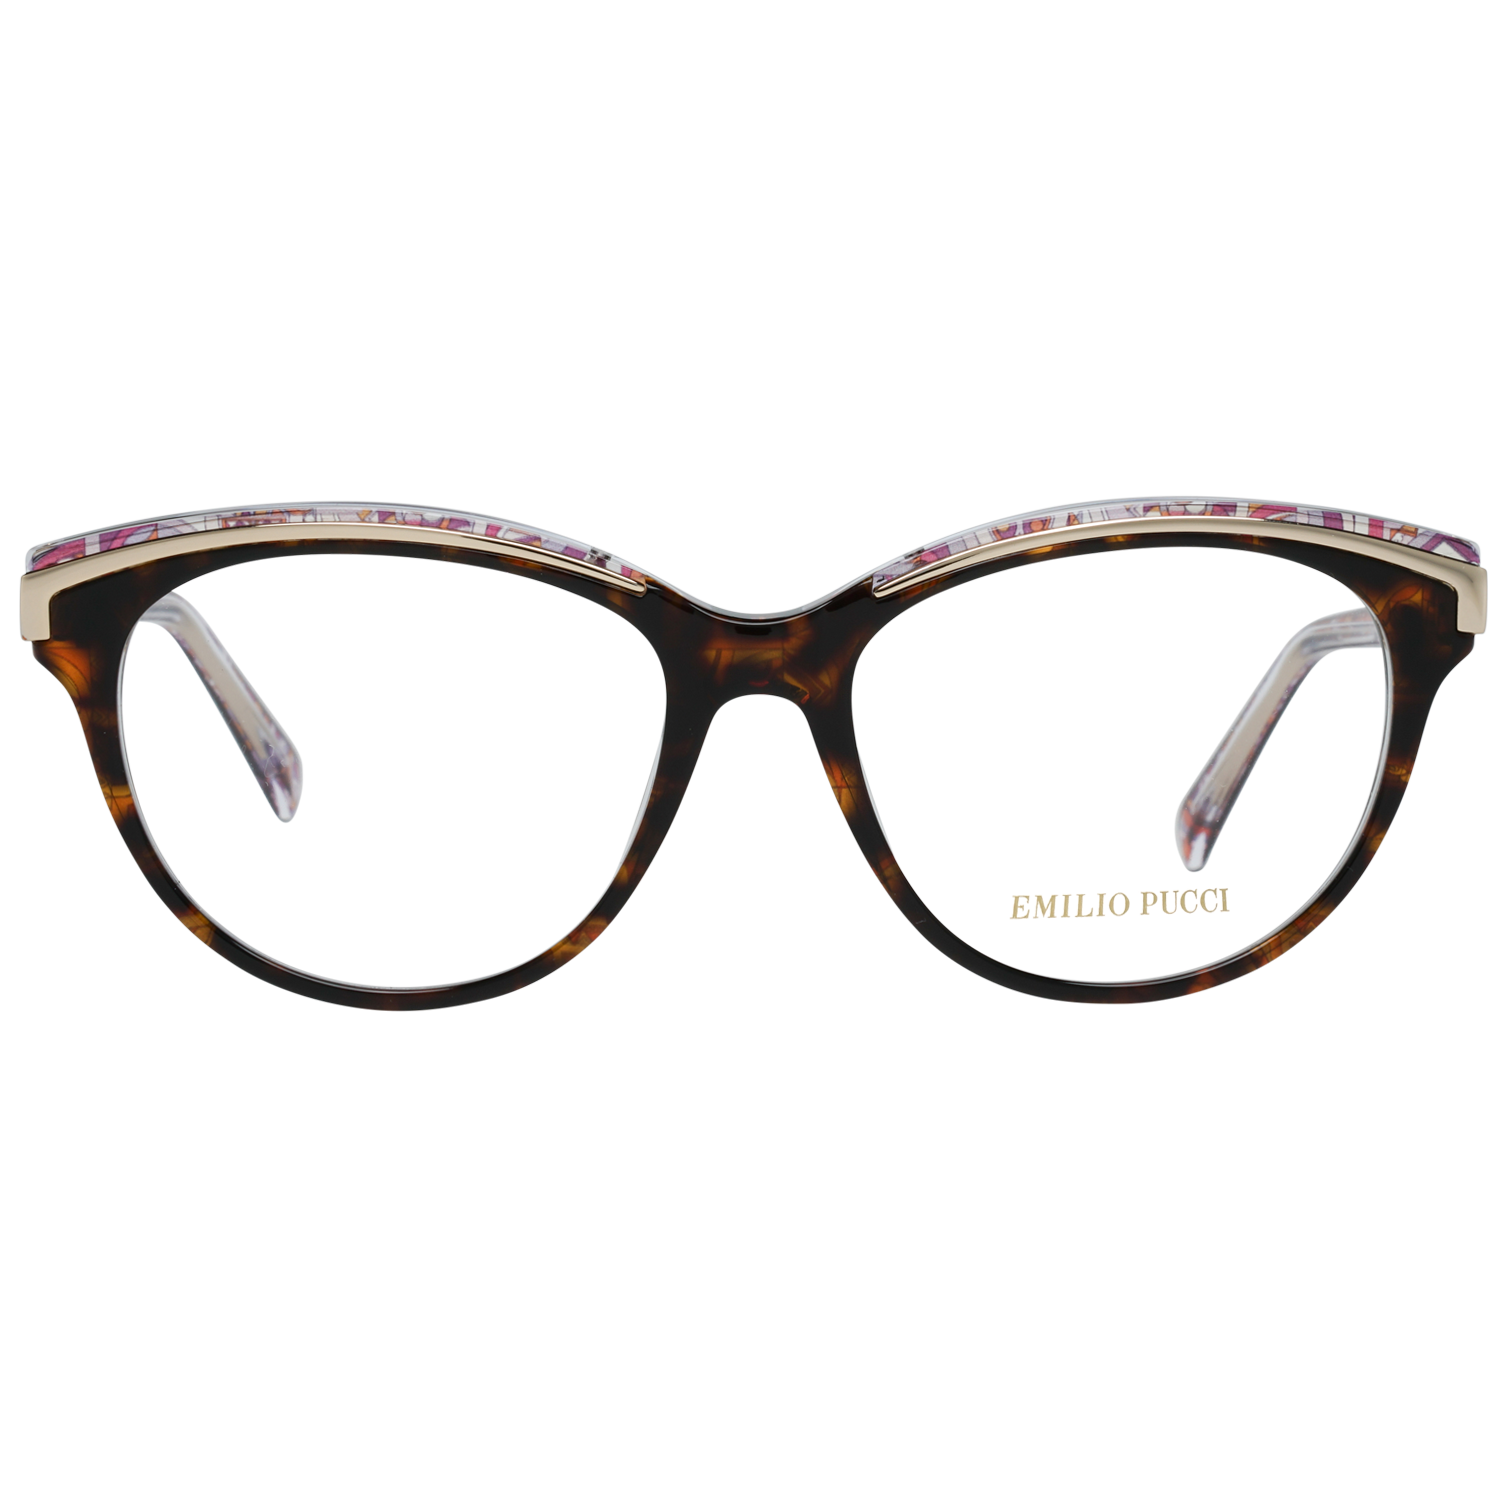 Emilio Pucci Frames Emilio Pucci Optical Frame EP5038 052 53 Eyeglasses Eyewear UK USA Australia 